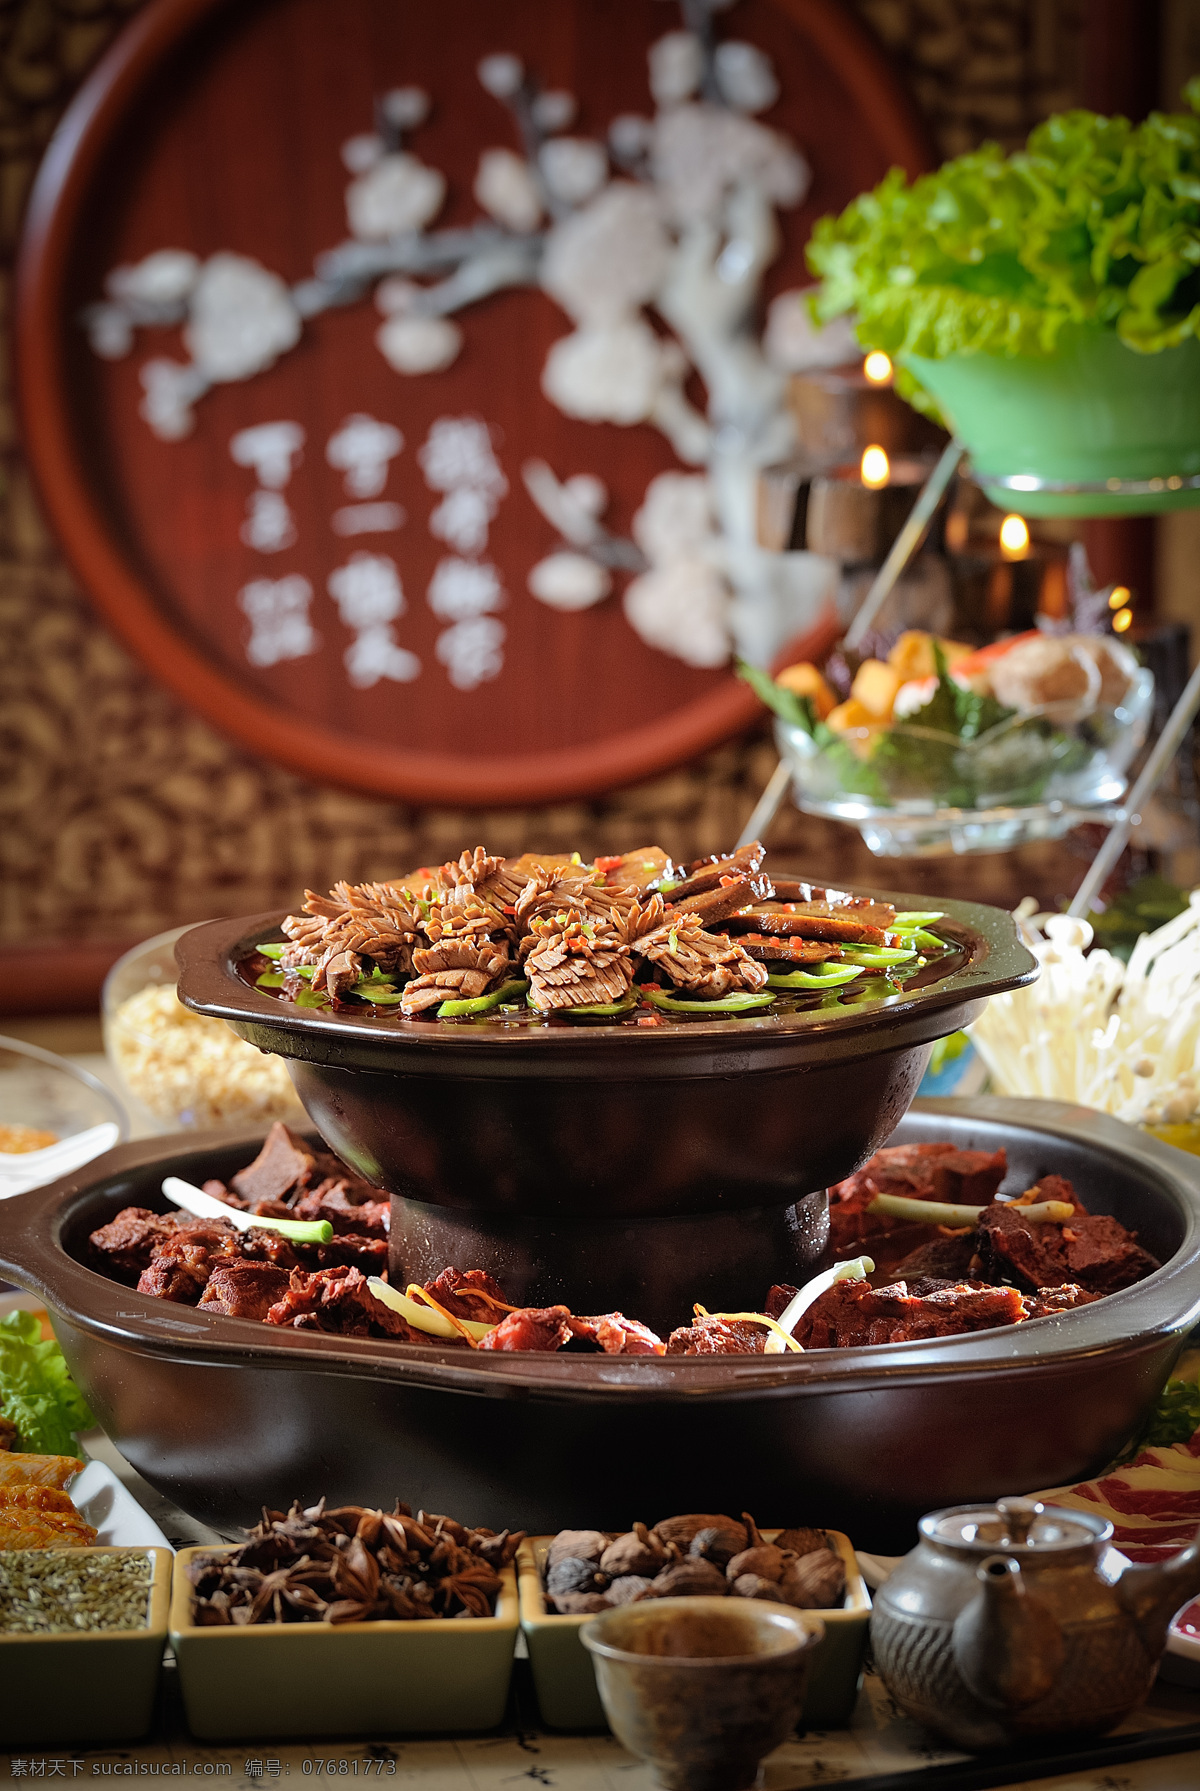 火锅 丰盛 好吃 美味 双层 鸭肾 腊肉 炖肉 餐饮美食 传统美食